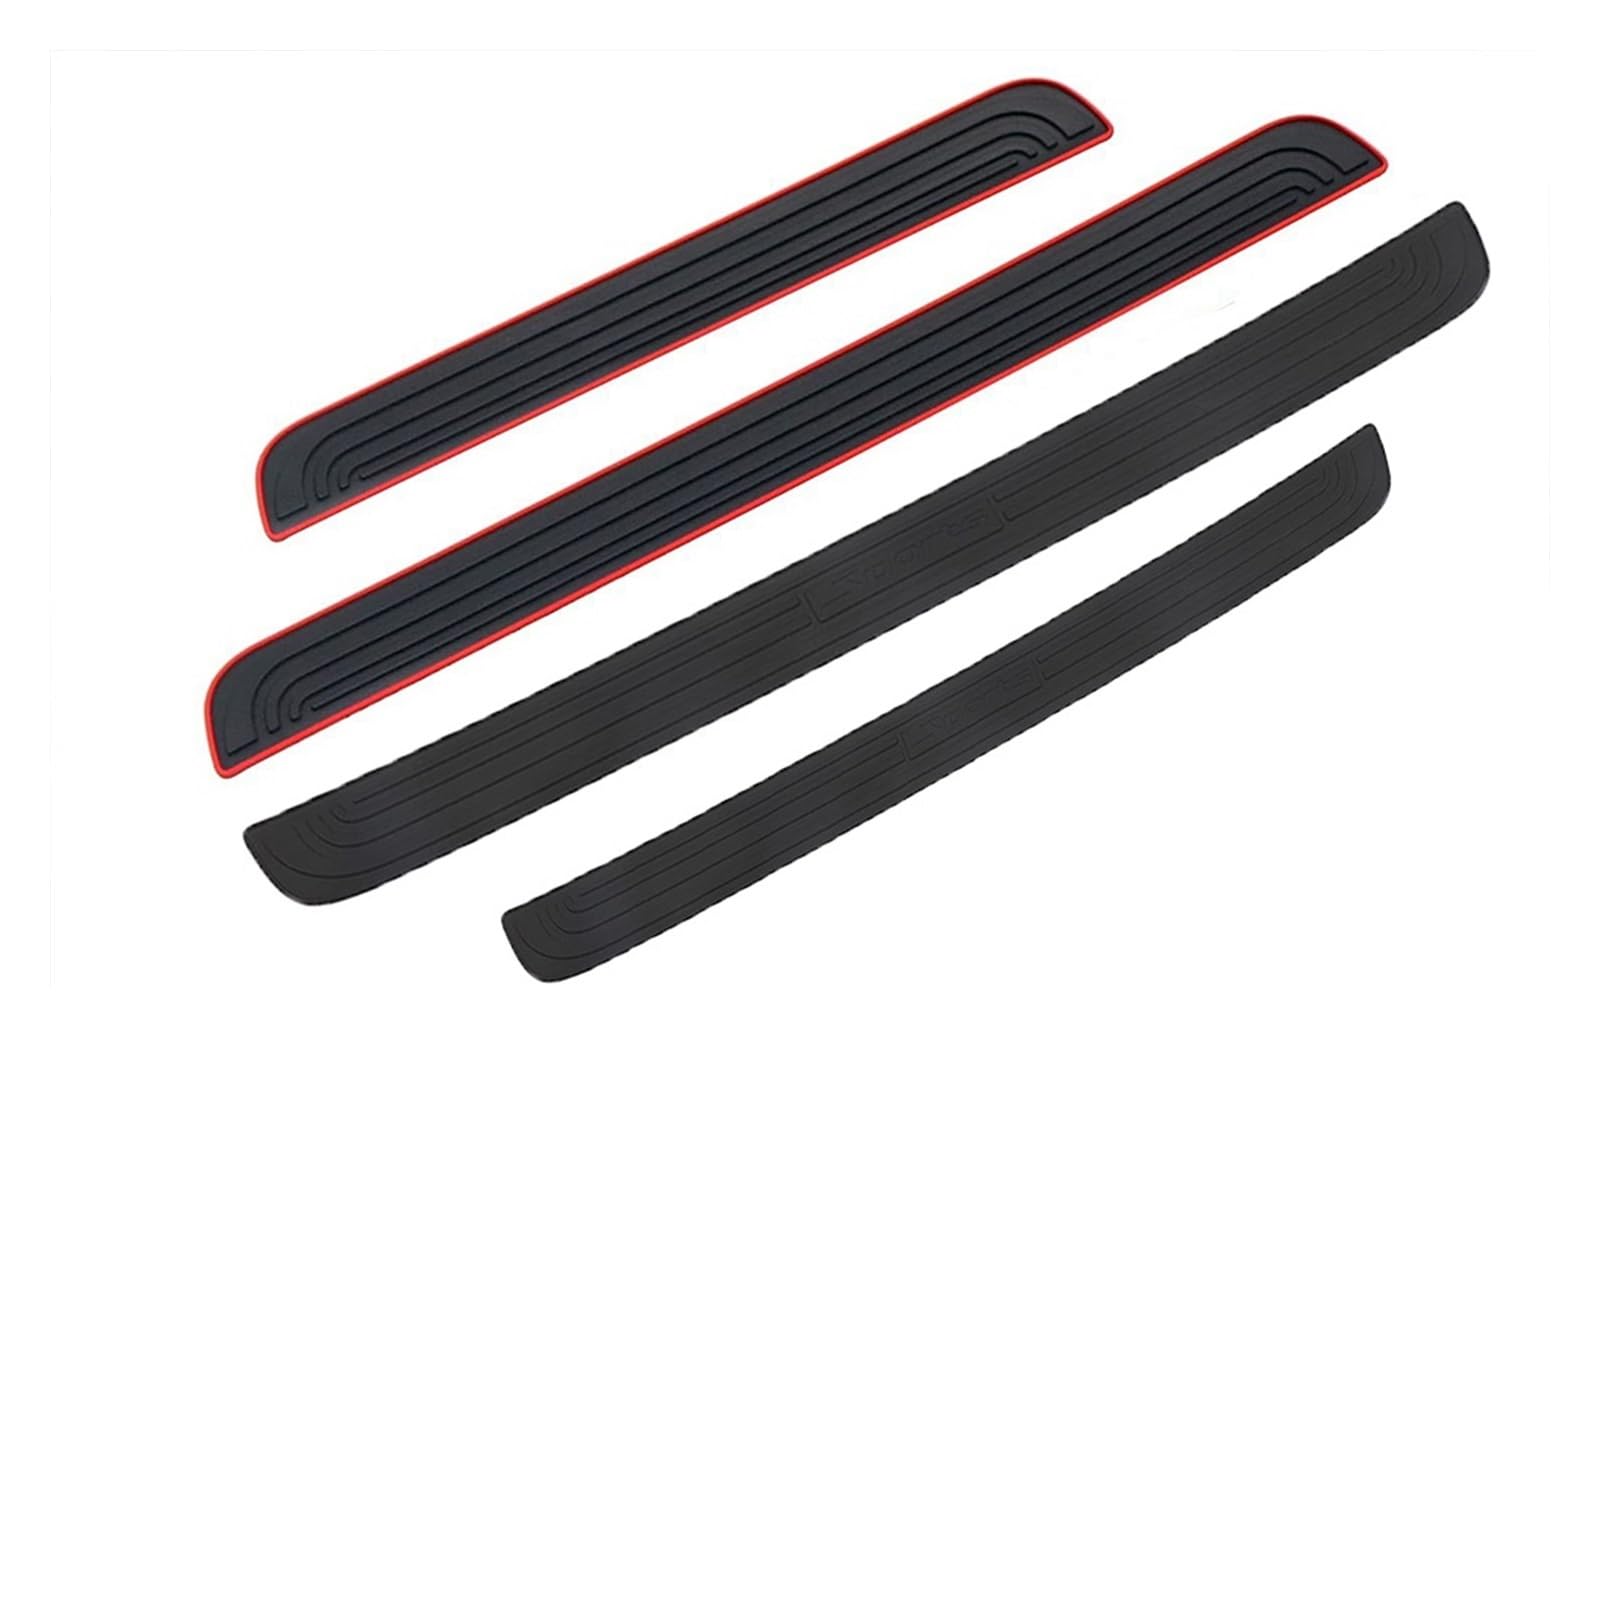 104 cm 90 cm Auto Stamm Tür Sill Platte Schutz Hinten Stoßstange Schutz Gummi Formteile Pad Trim Abdeckung Streifen Auto styling(Black-104cmx9cm) von MIXOAE